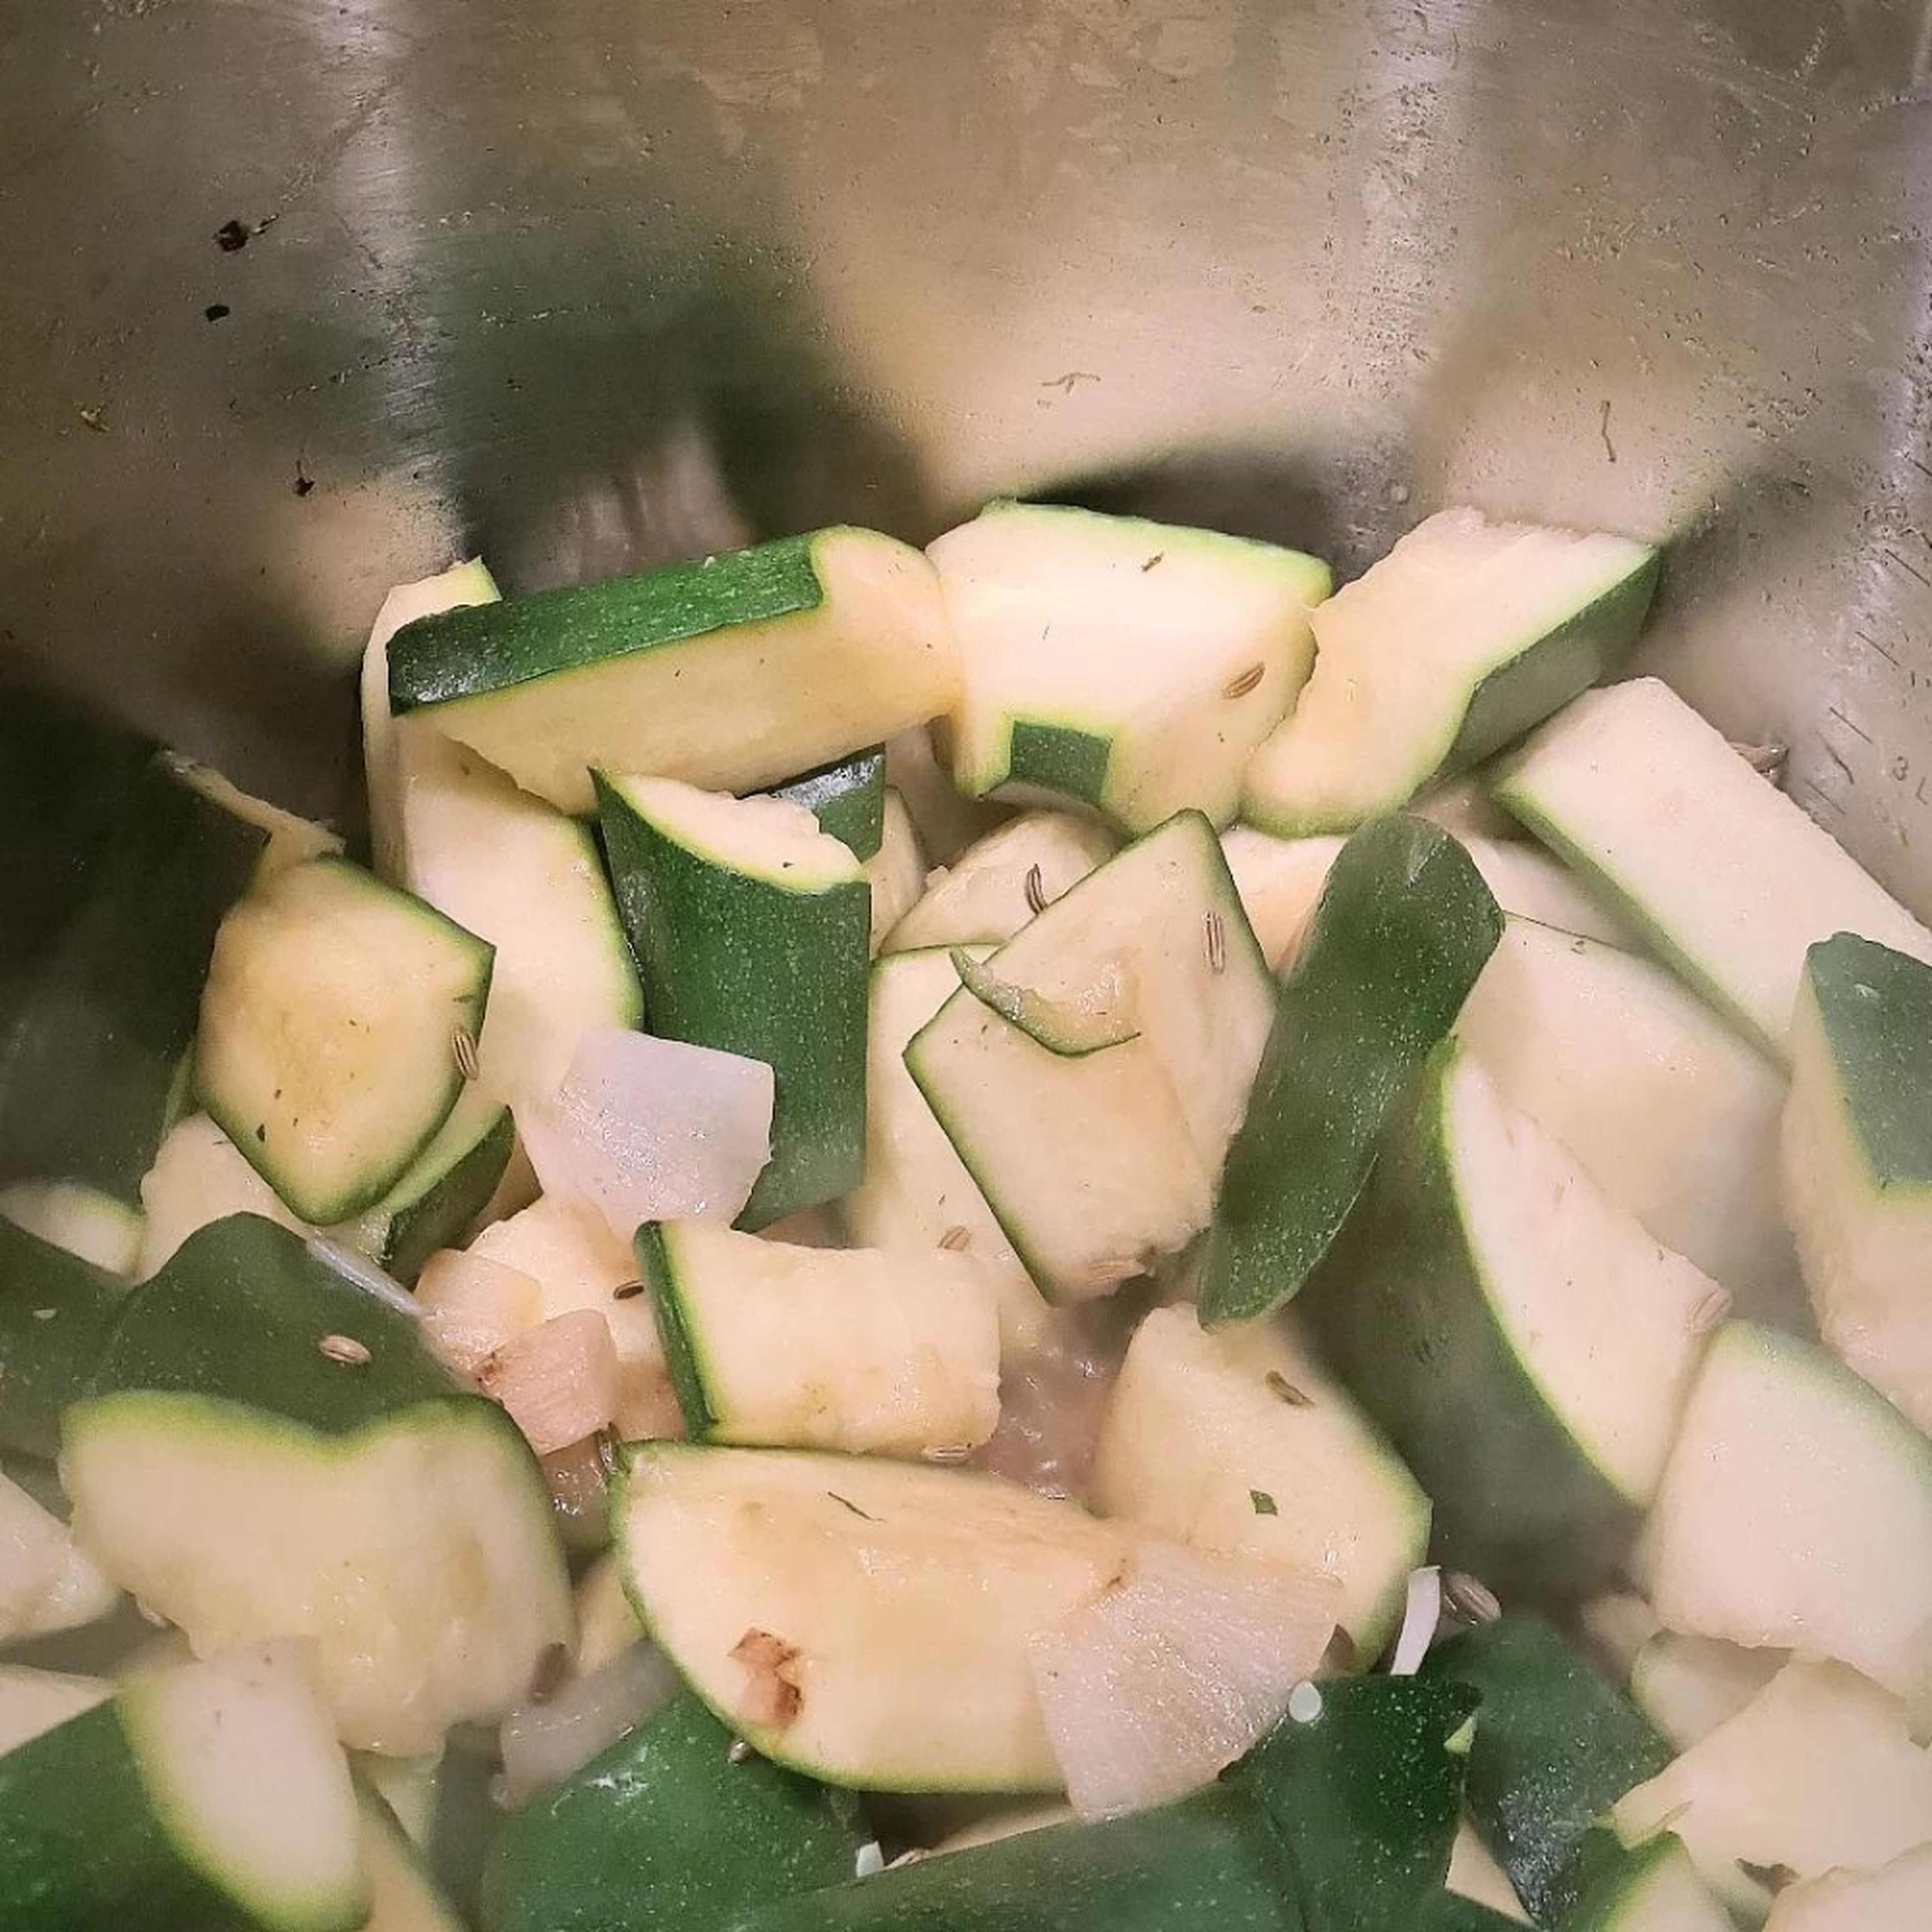 Die Zucchini in grobe Stücke schneiden und mit in den Topf geben. Zugedeckt etwa 10 Minuten auf kleiner Flamme schmoren, bis die Zucchini weich ist. Gelegentlich umrühren, damit nichts anbrennt.